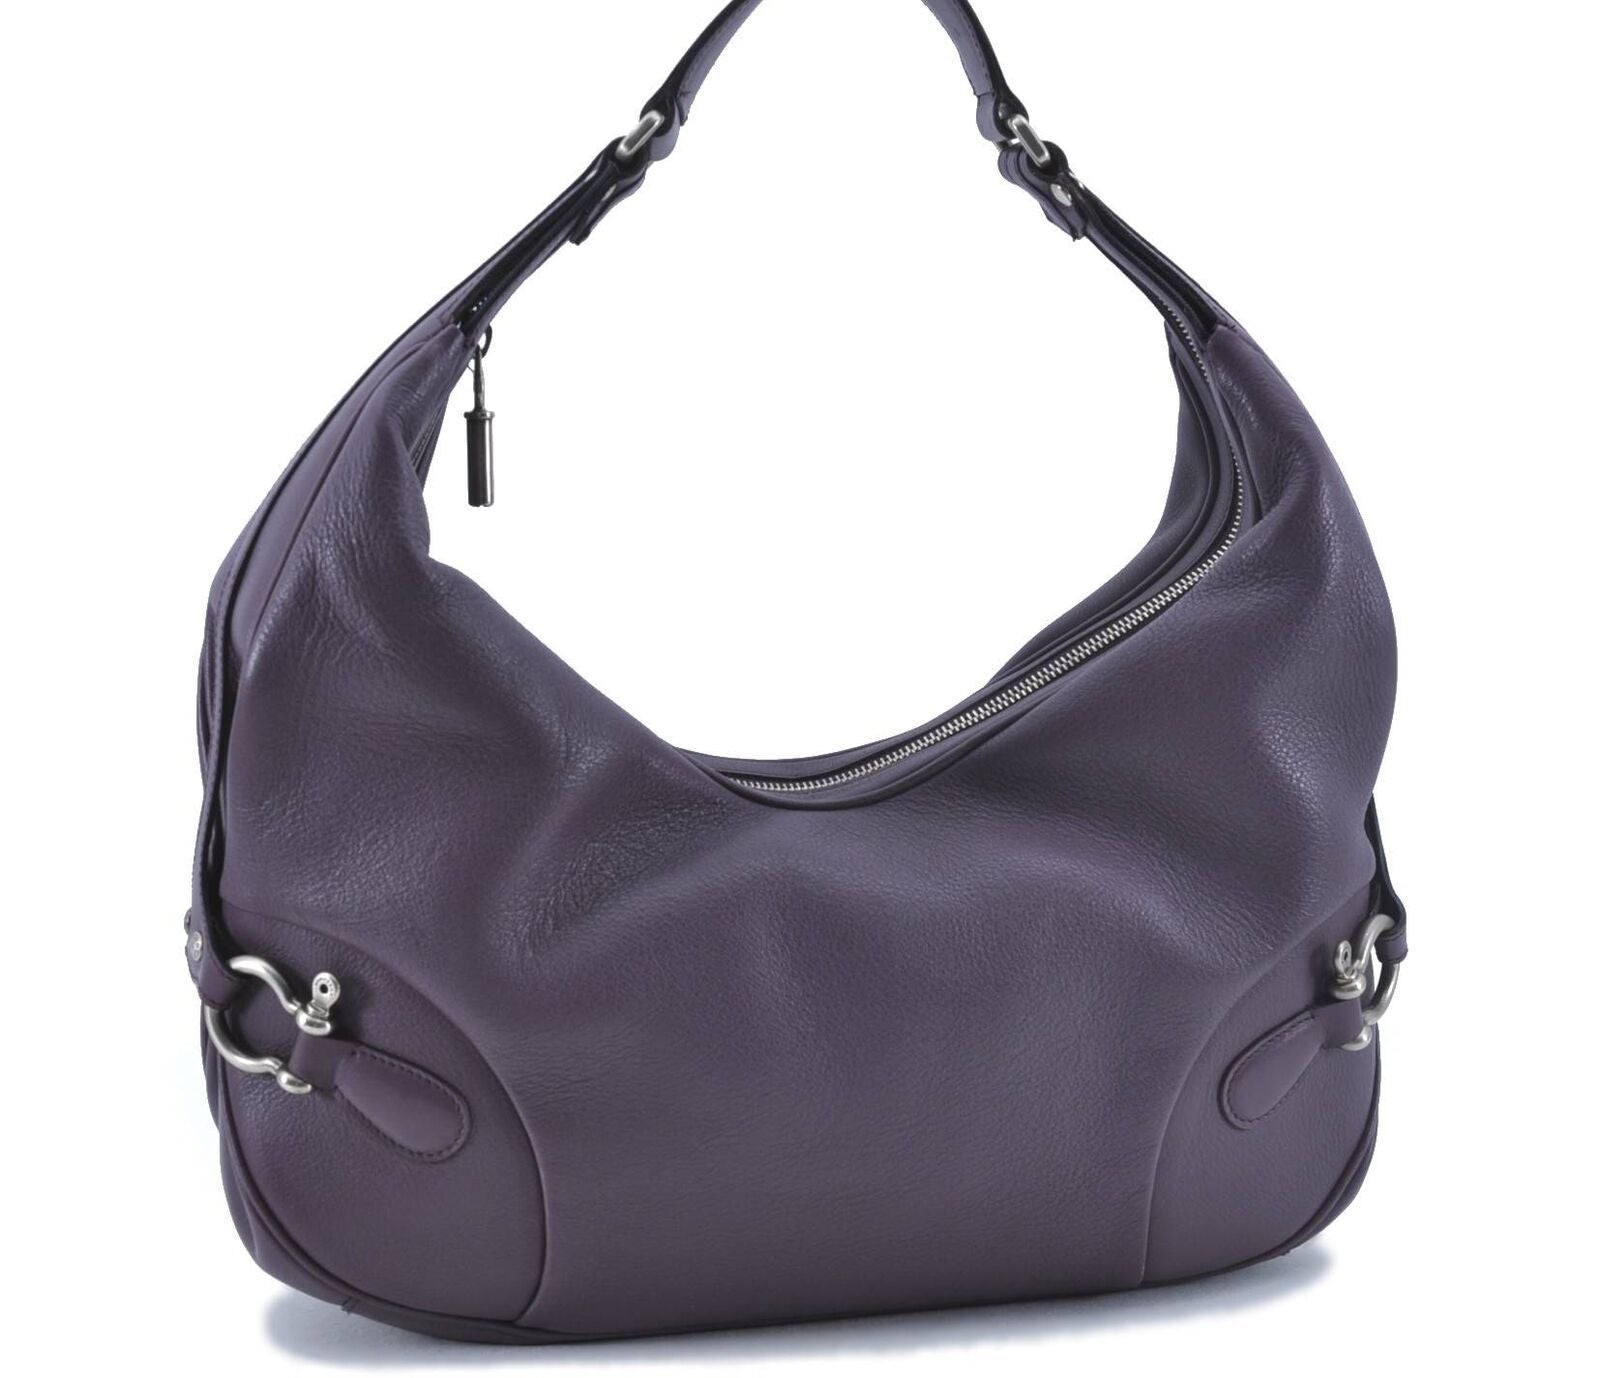 Authentic BURBERRY Vintage Leather Shoulder Bag Purse Purple G6228